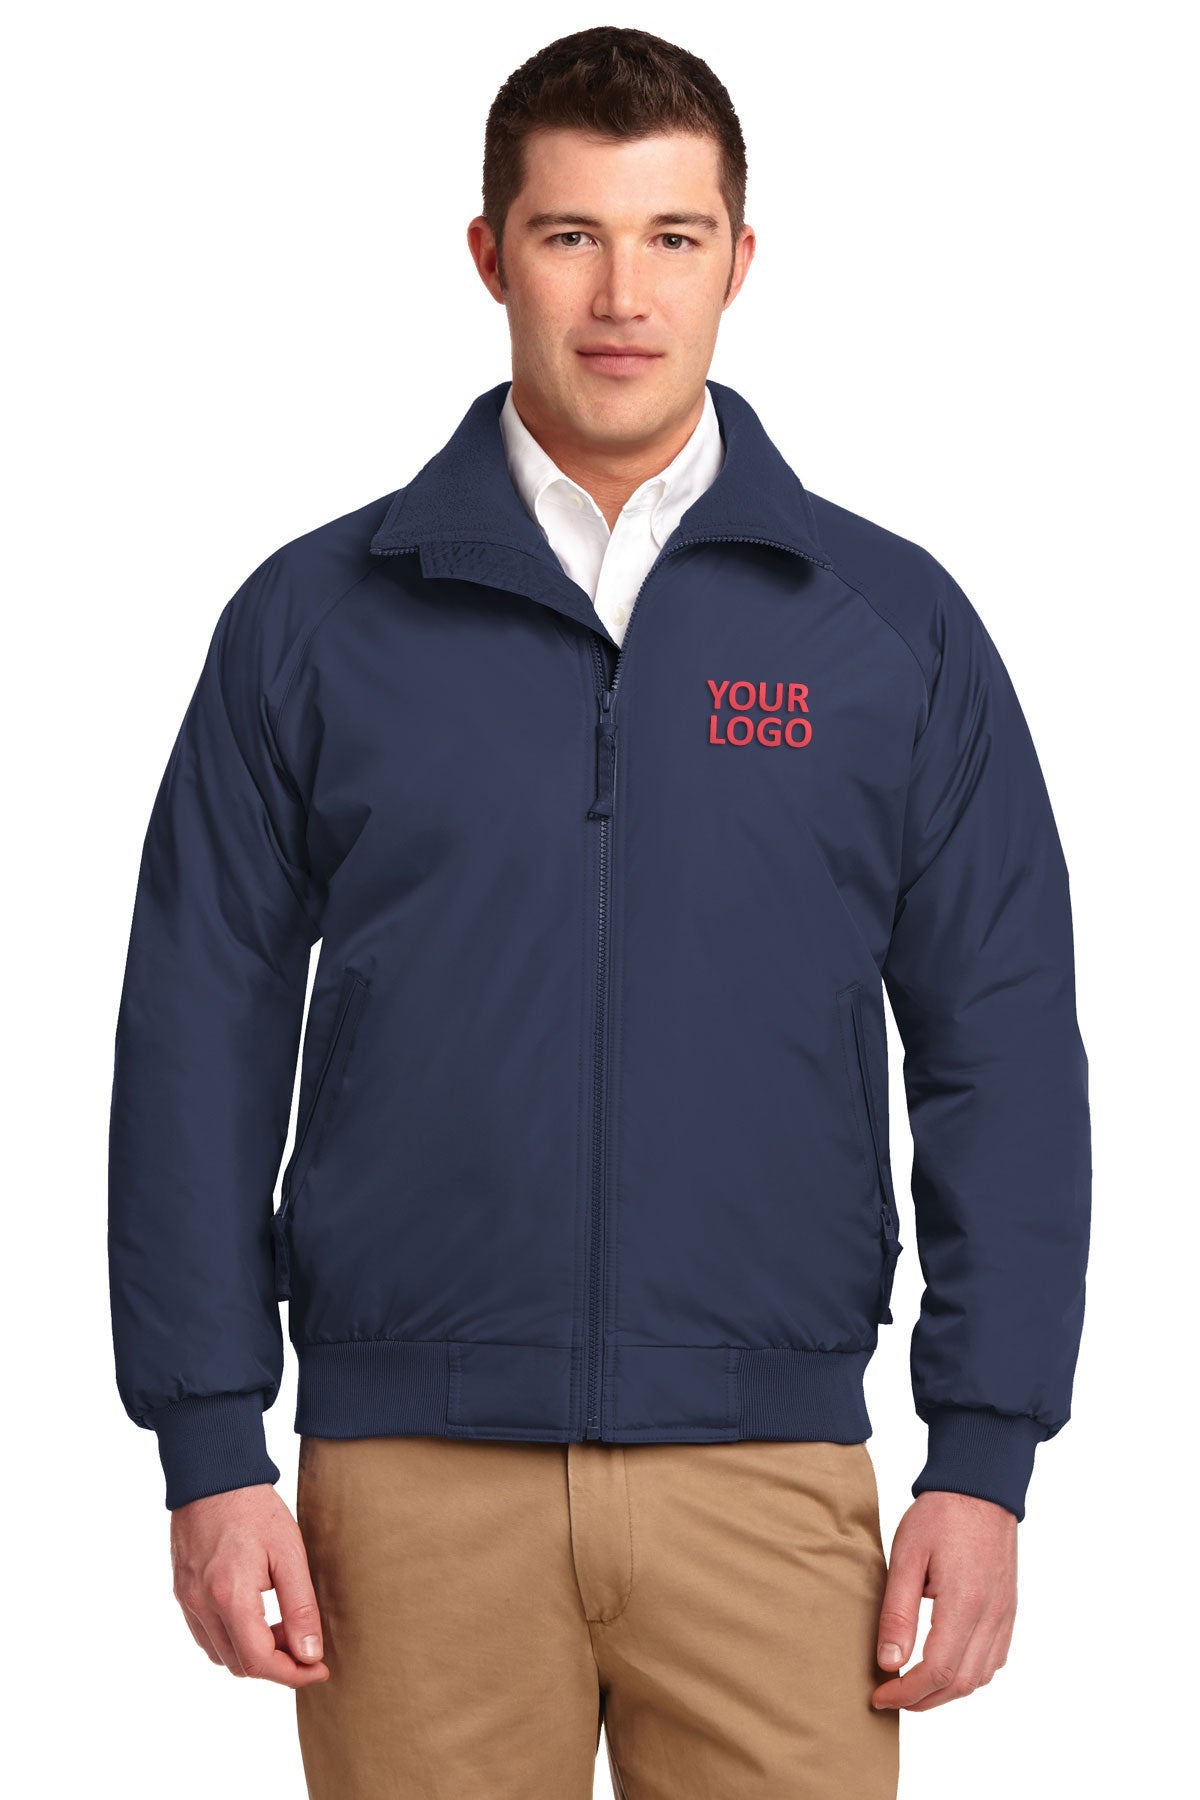 port authority true navy/ true navy tlj754 promotional jackets company logo